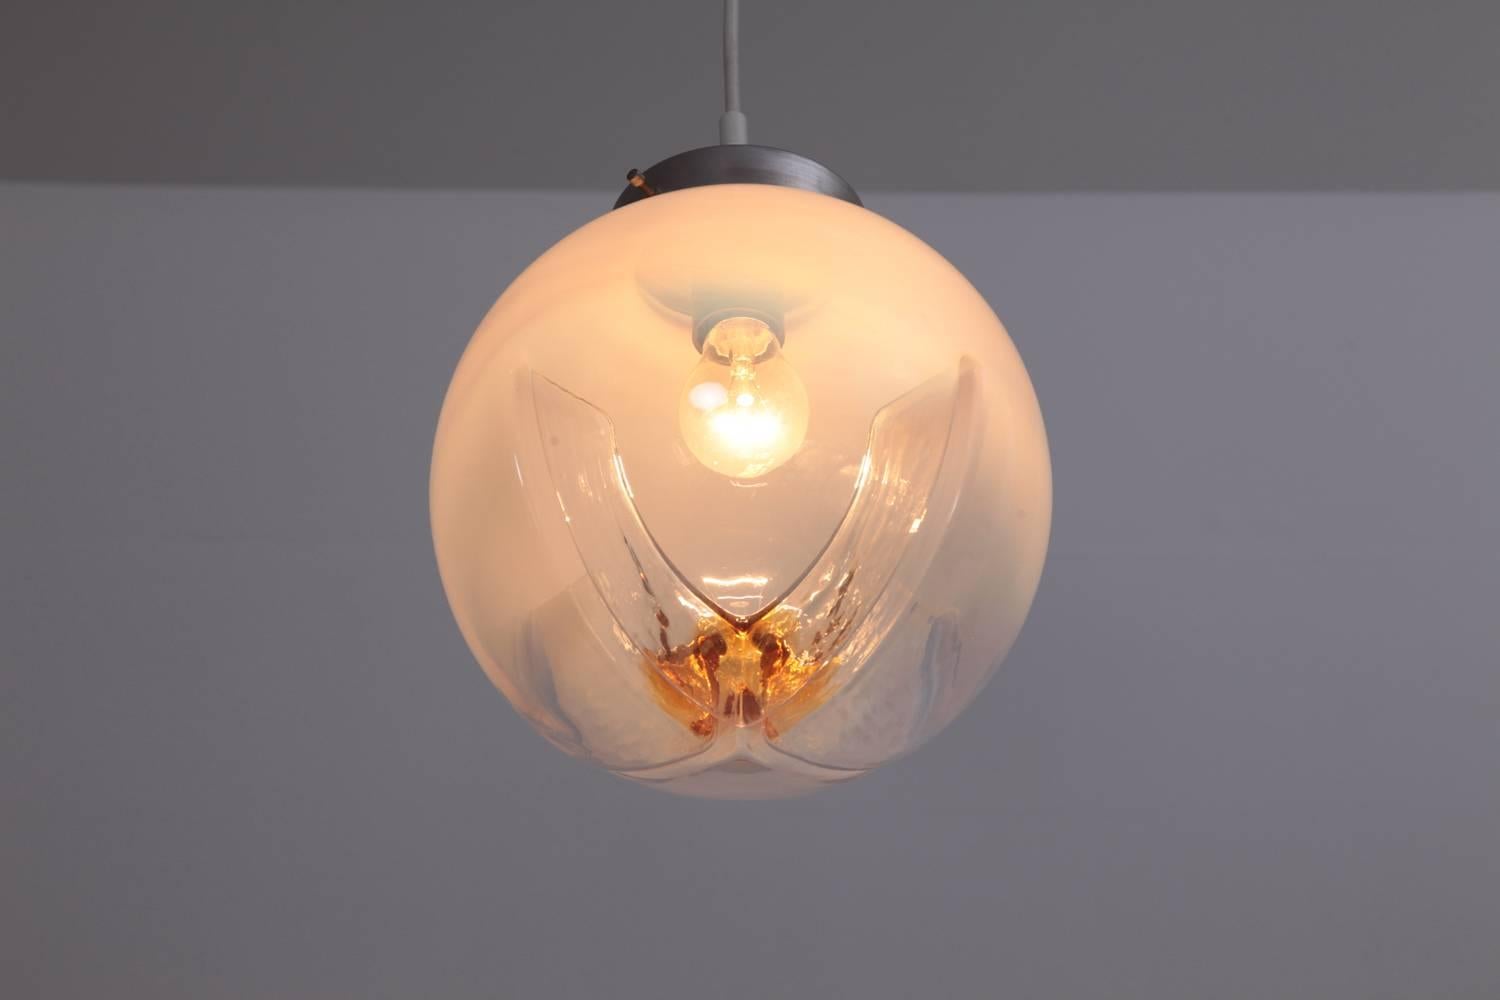 lampe suspendue des années 1970 avec globes en verre dépoli à transparent avec inclusions d'ambre par Mazzega.
Pour plus de sécurité, la lampe doit être contrôlée localement par un spécialiste en fonction des exigences locales.